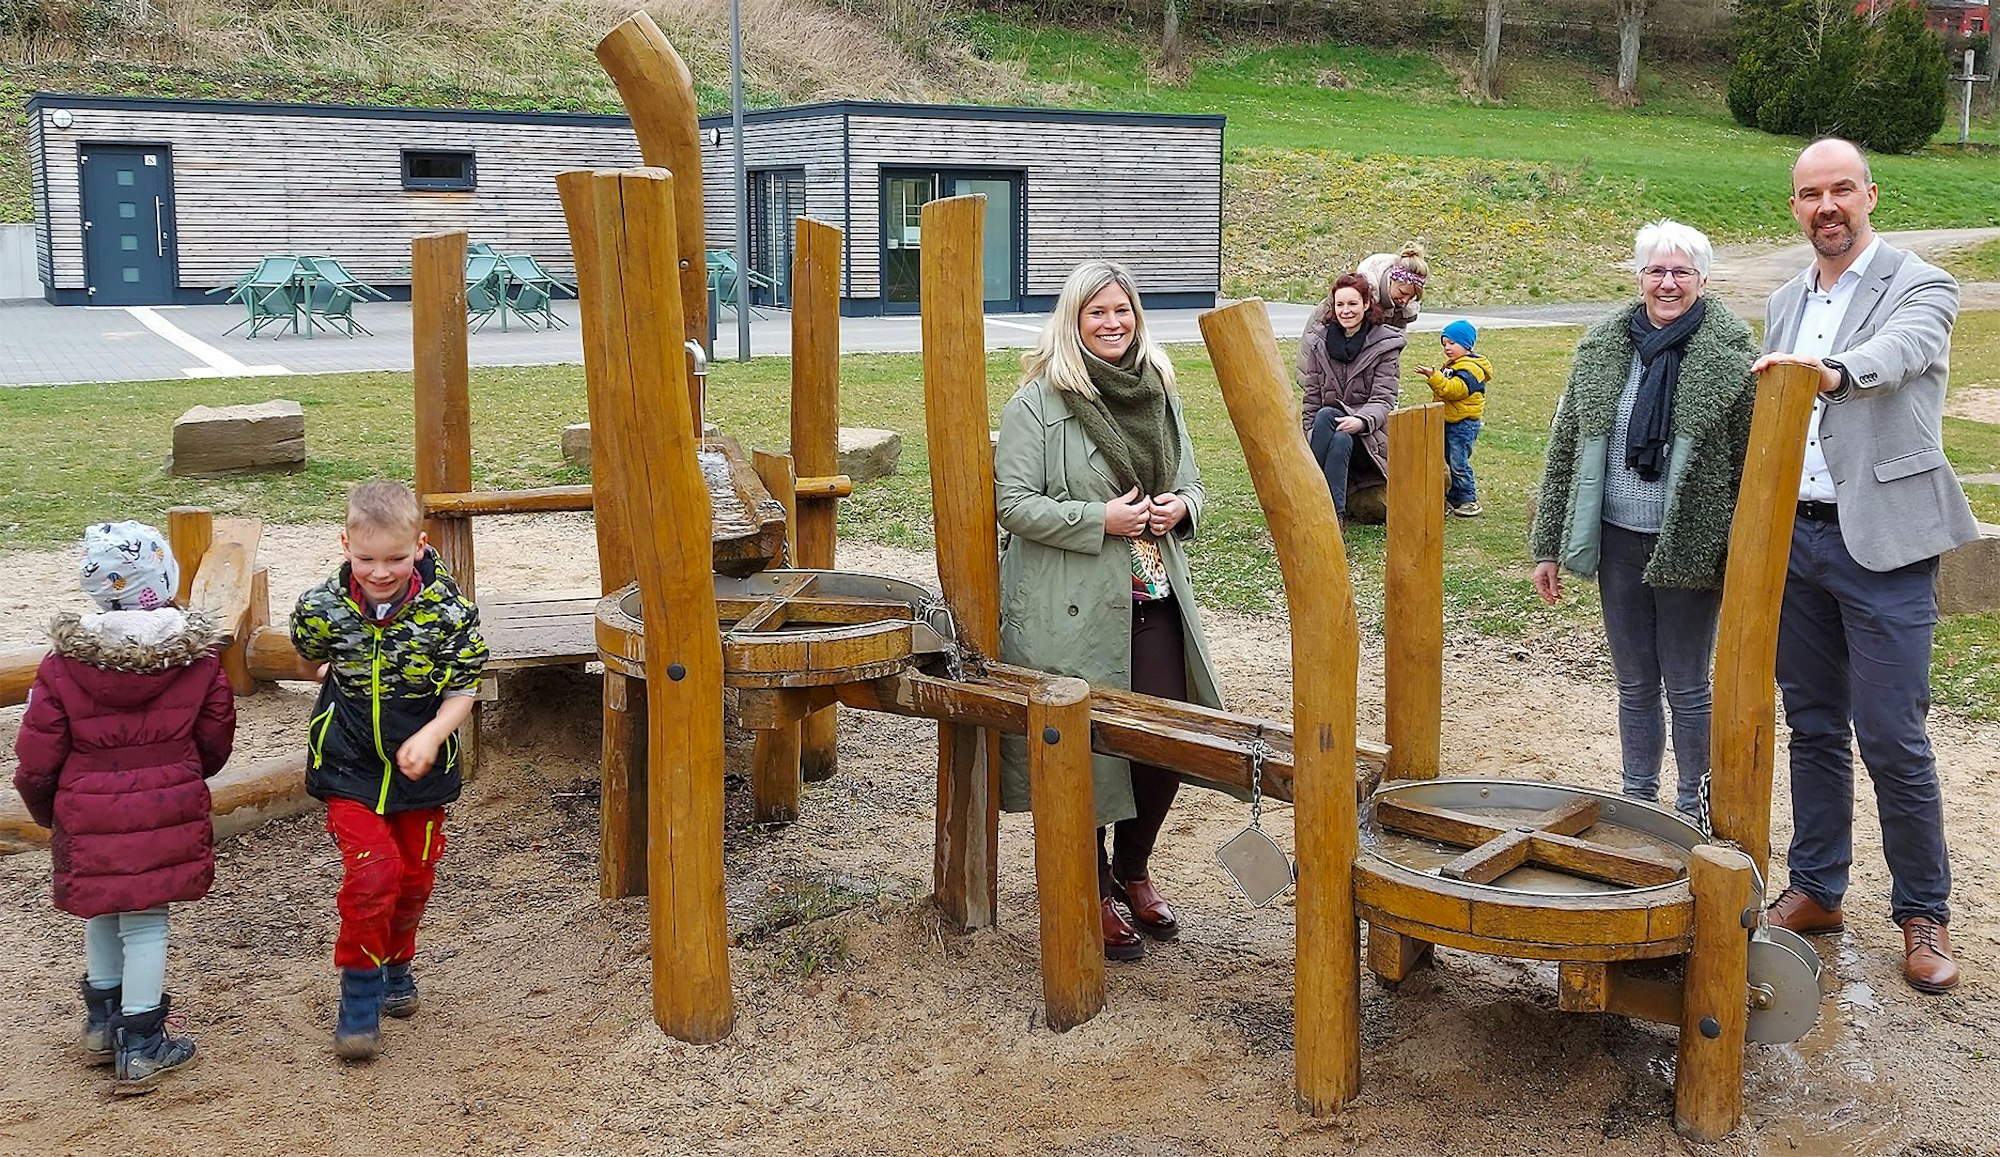 Bürgermeisterin Jennifer Meuren, Annegret Dreimüller und Guido Waters stehen am Kleinkinderspielplatz. Einige Kinder spielen.